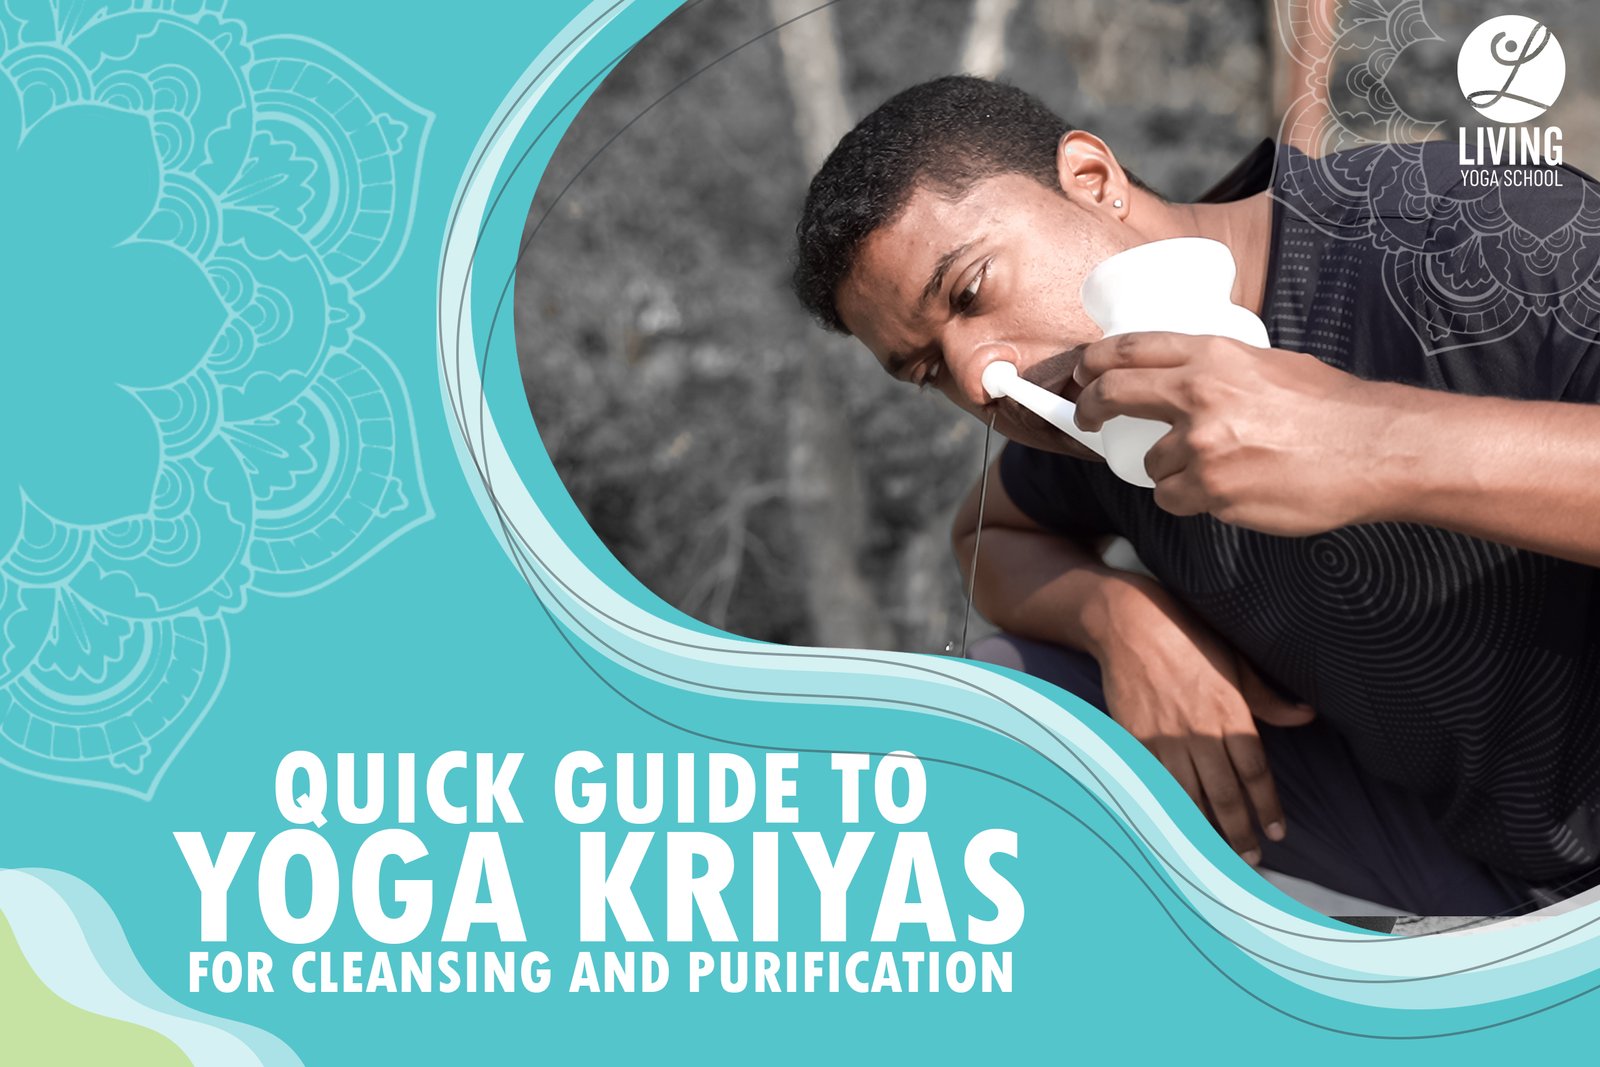 Yogic cleansing kriya